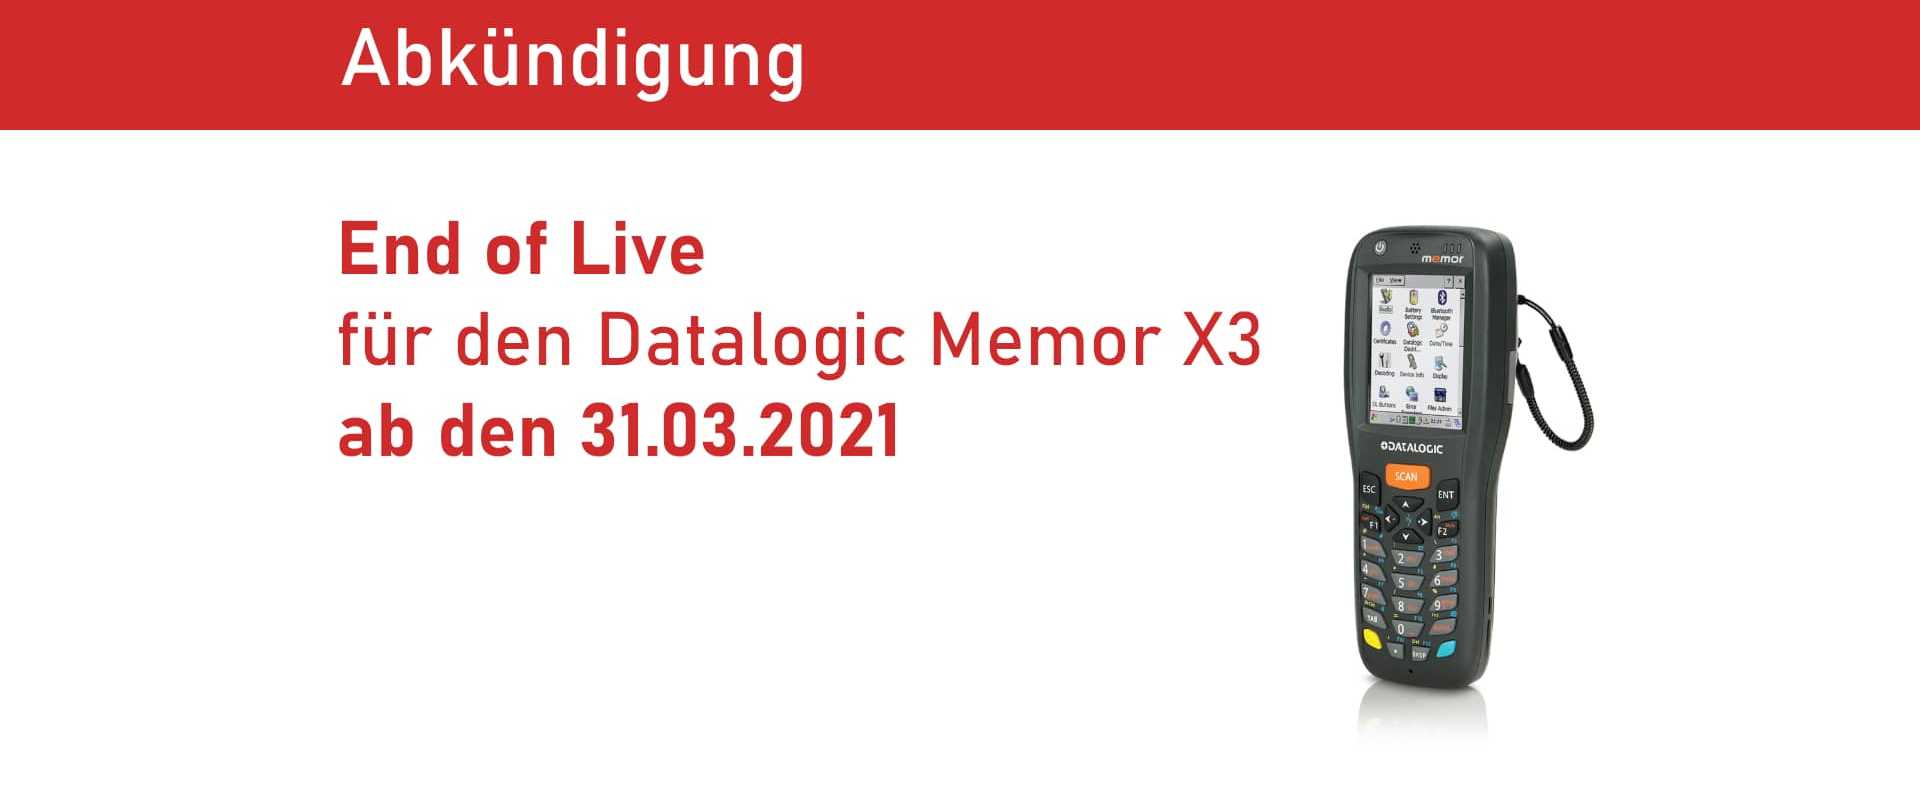 End of Live für den Datalogic Memor X3